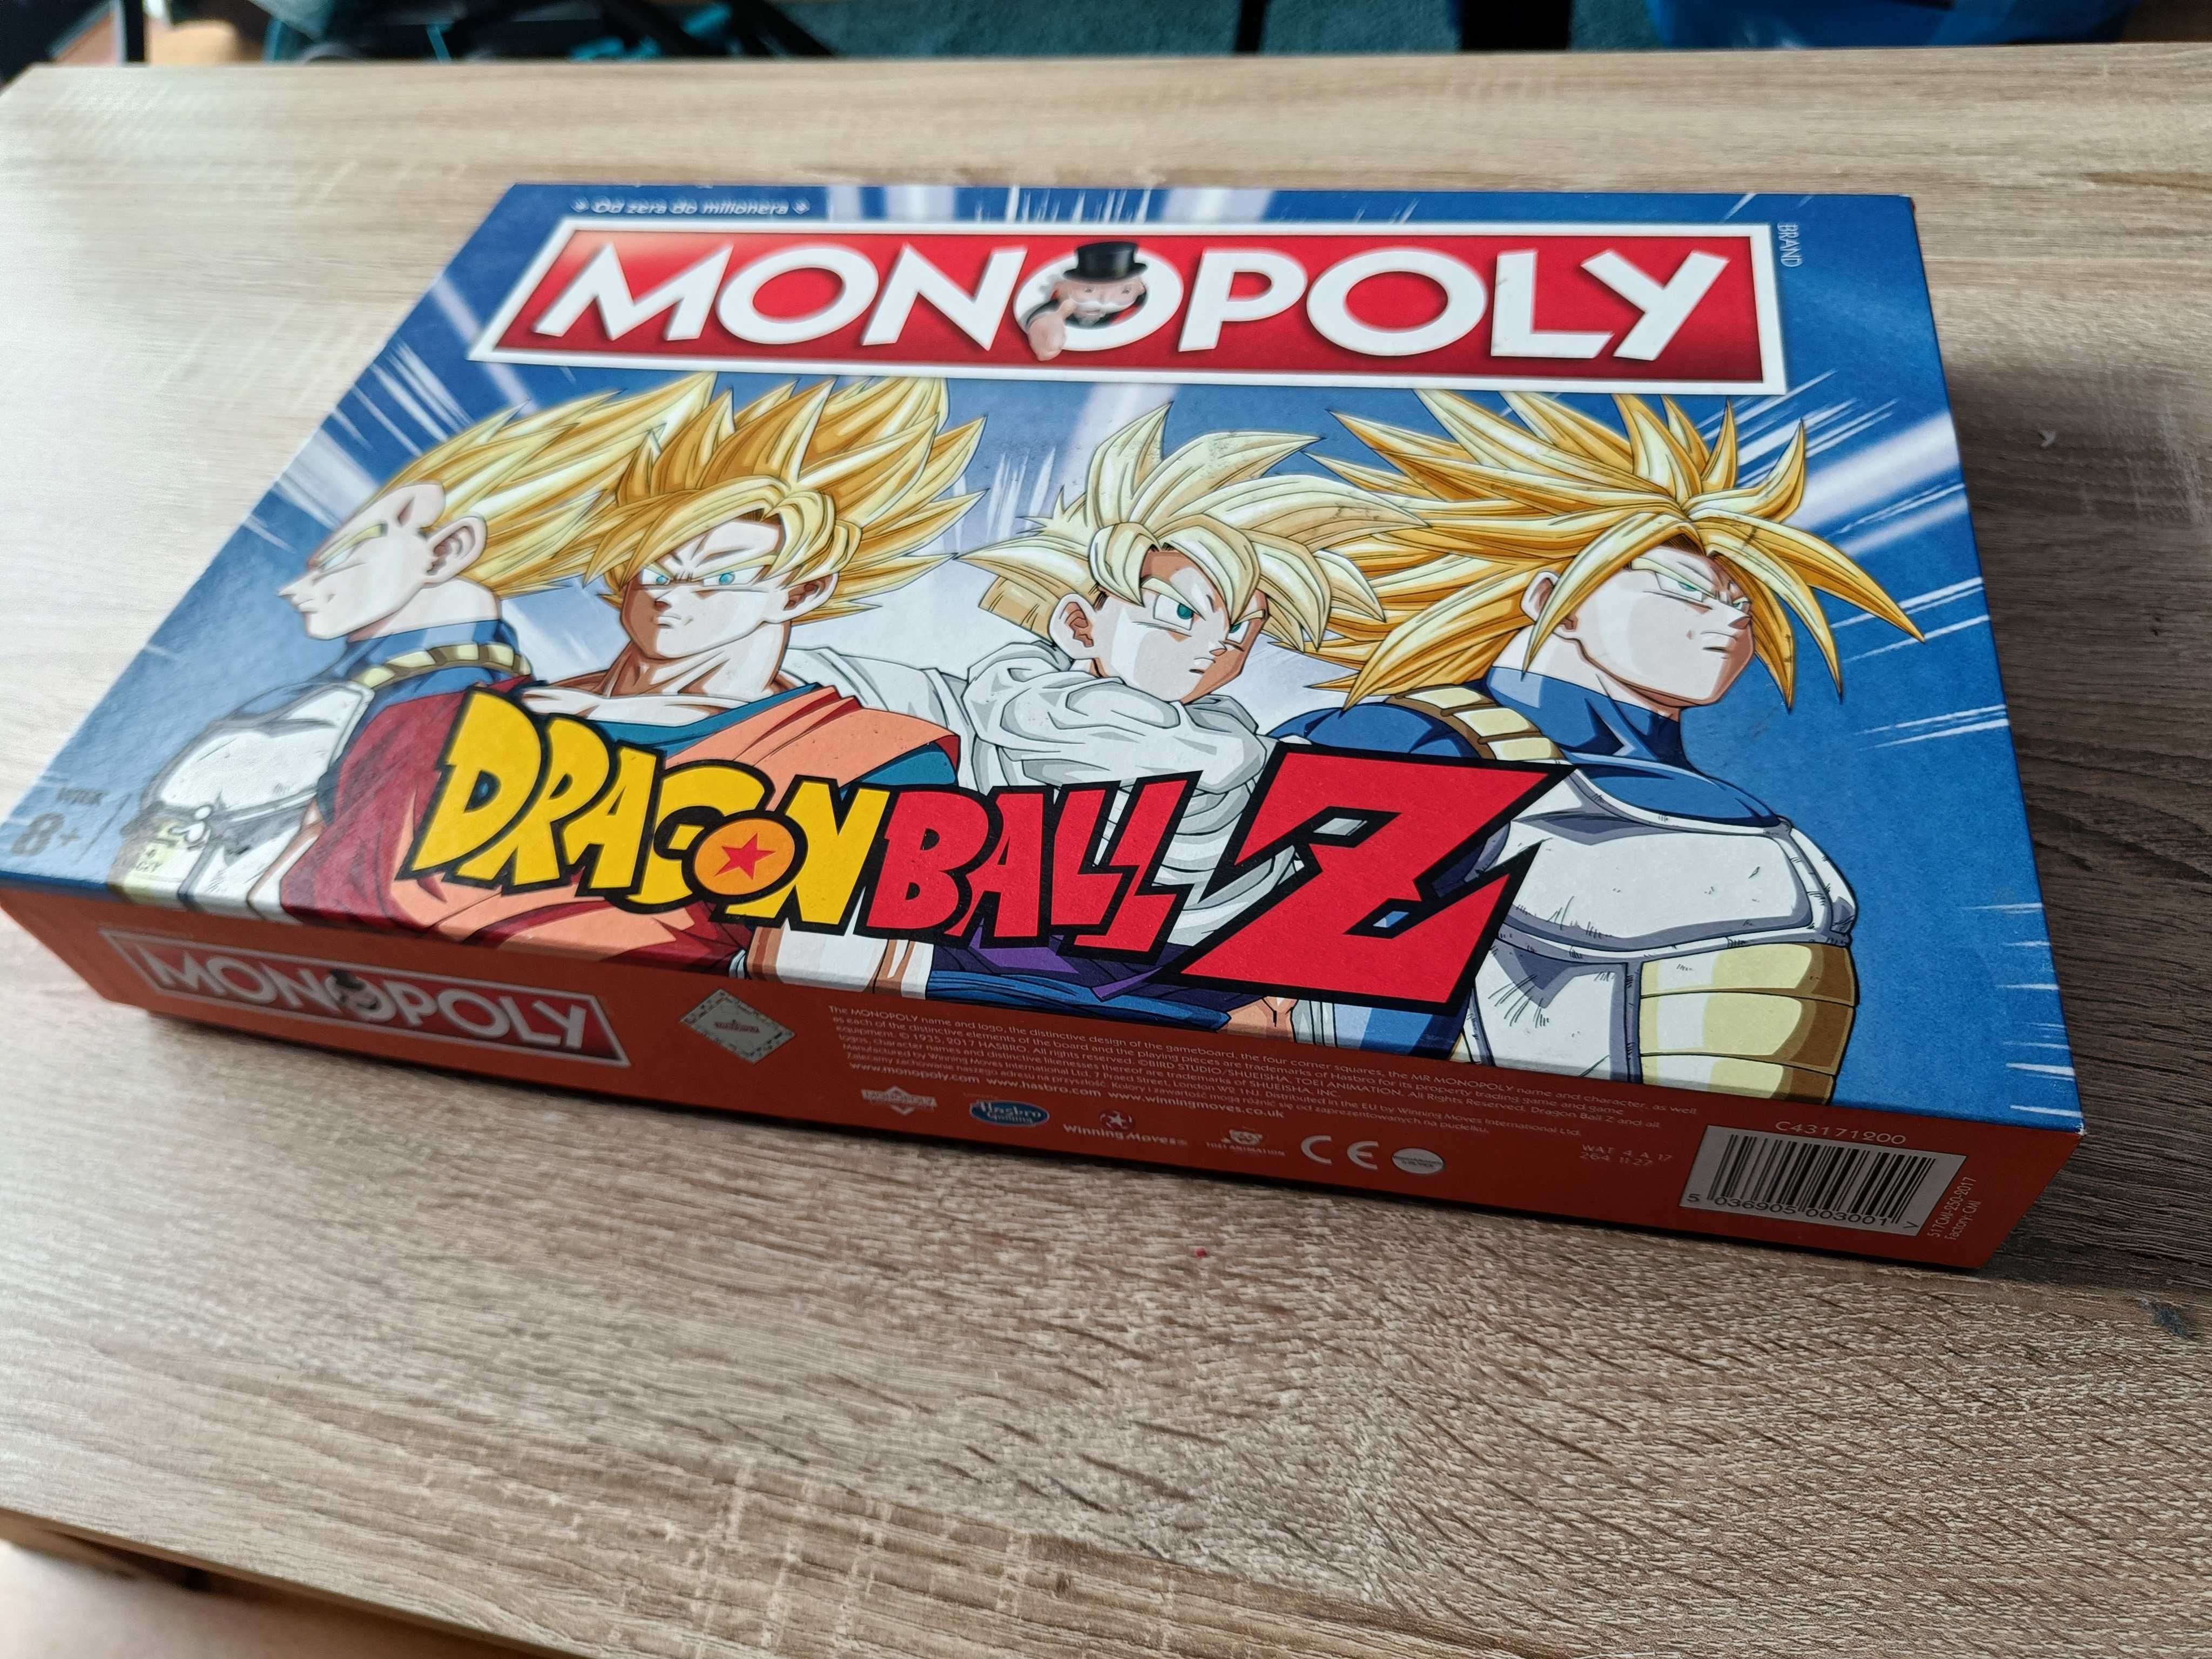 Gra Planszowa Monopoly Dragon Ball Z (PL)